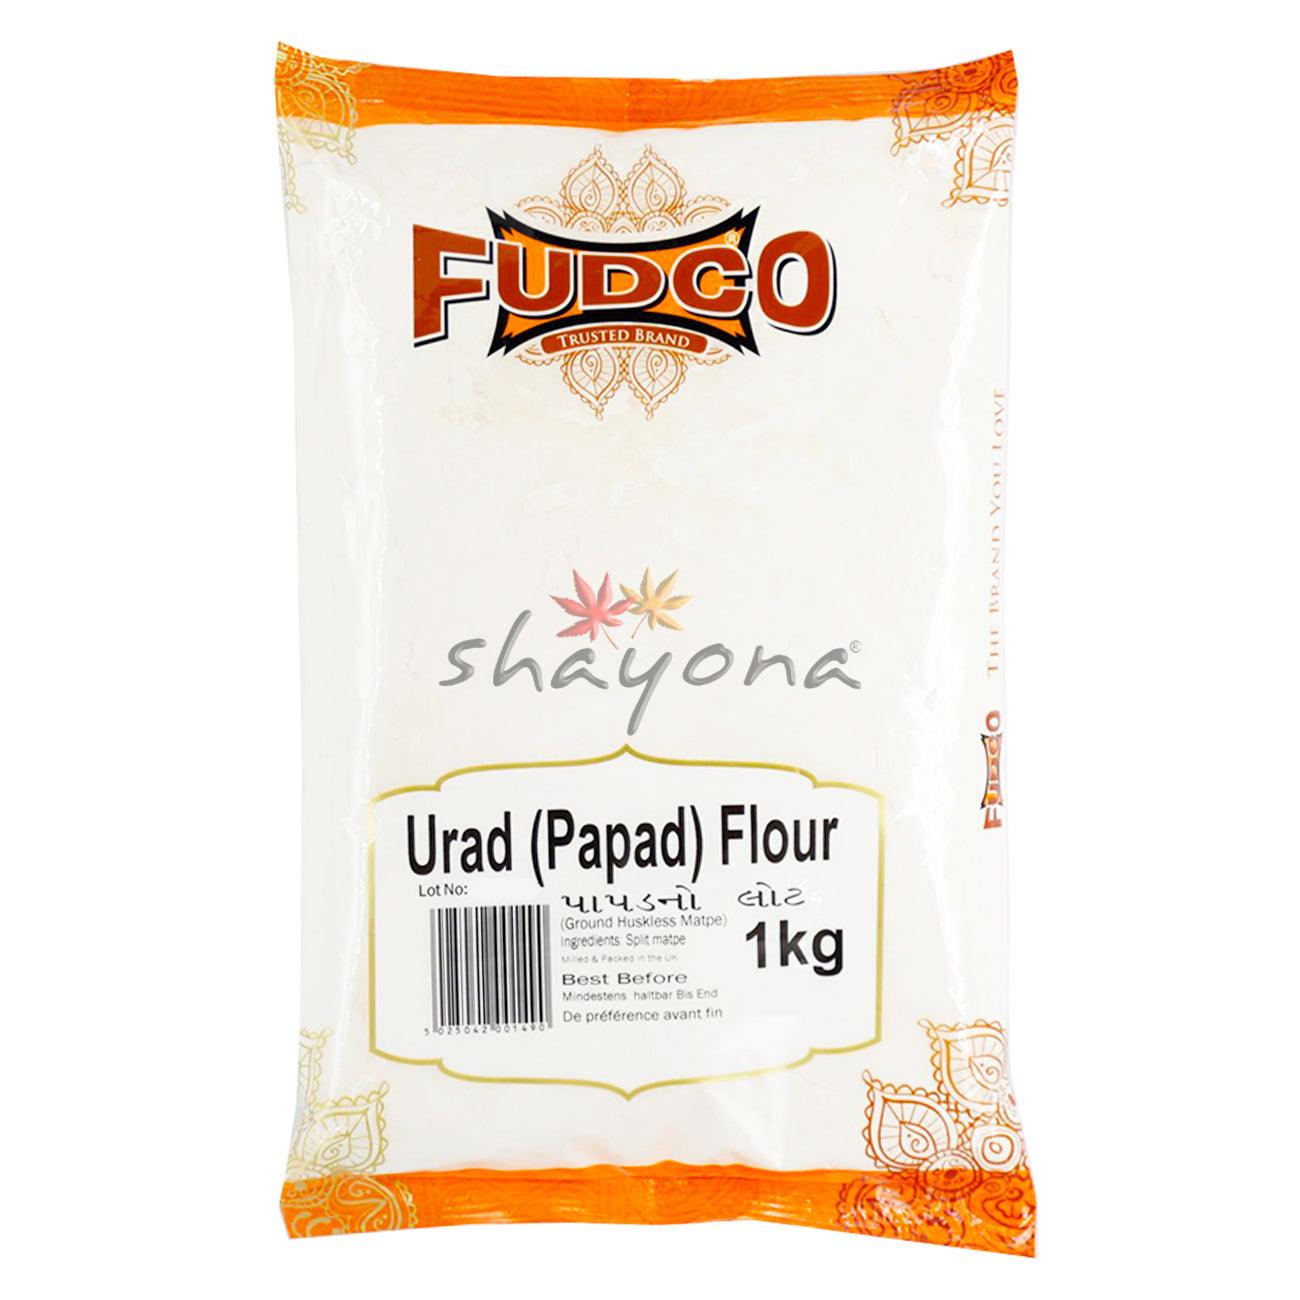 Fudco Urad (Papad) Flour - Shayona UK